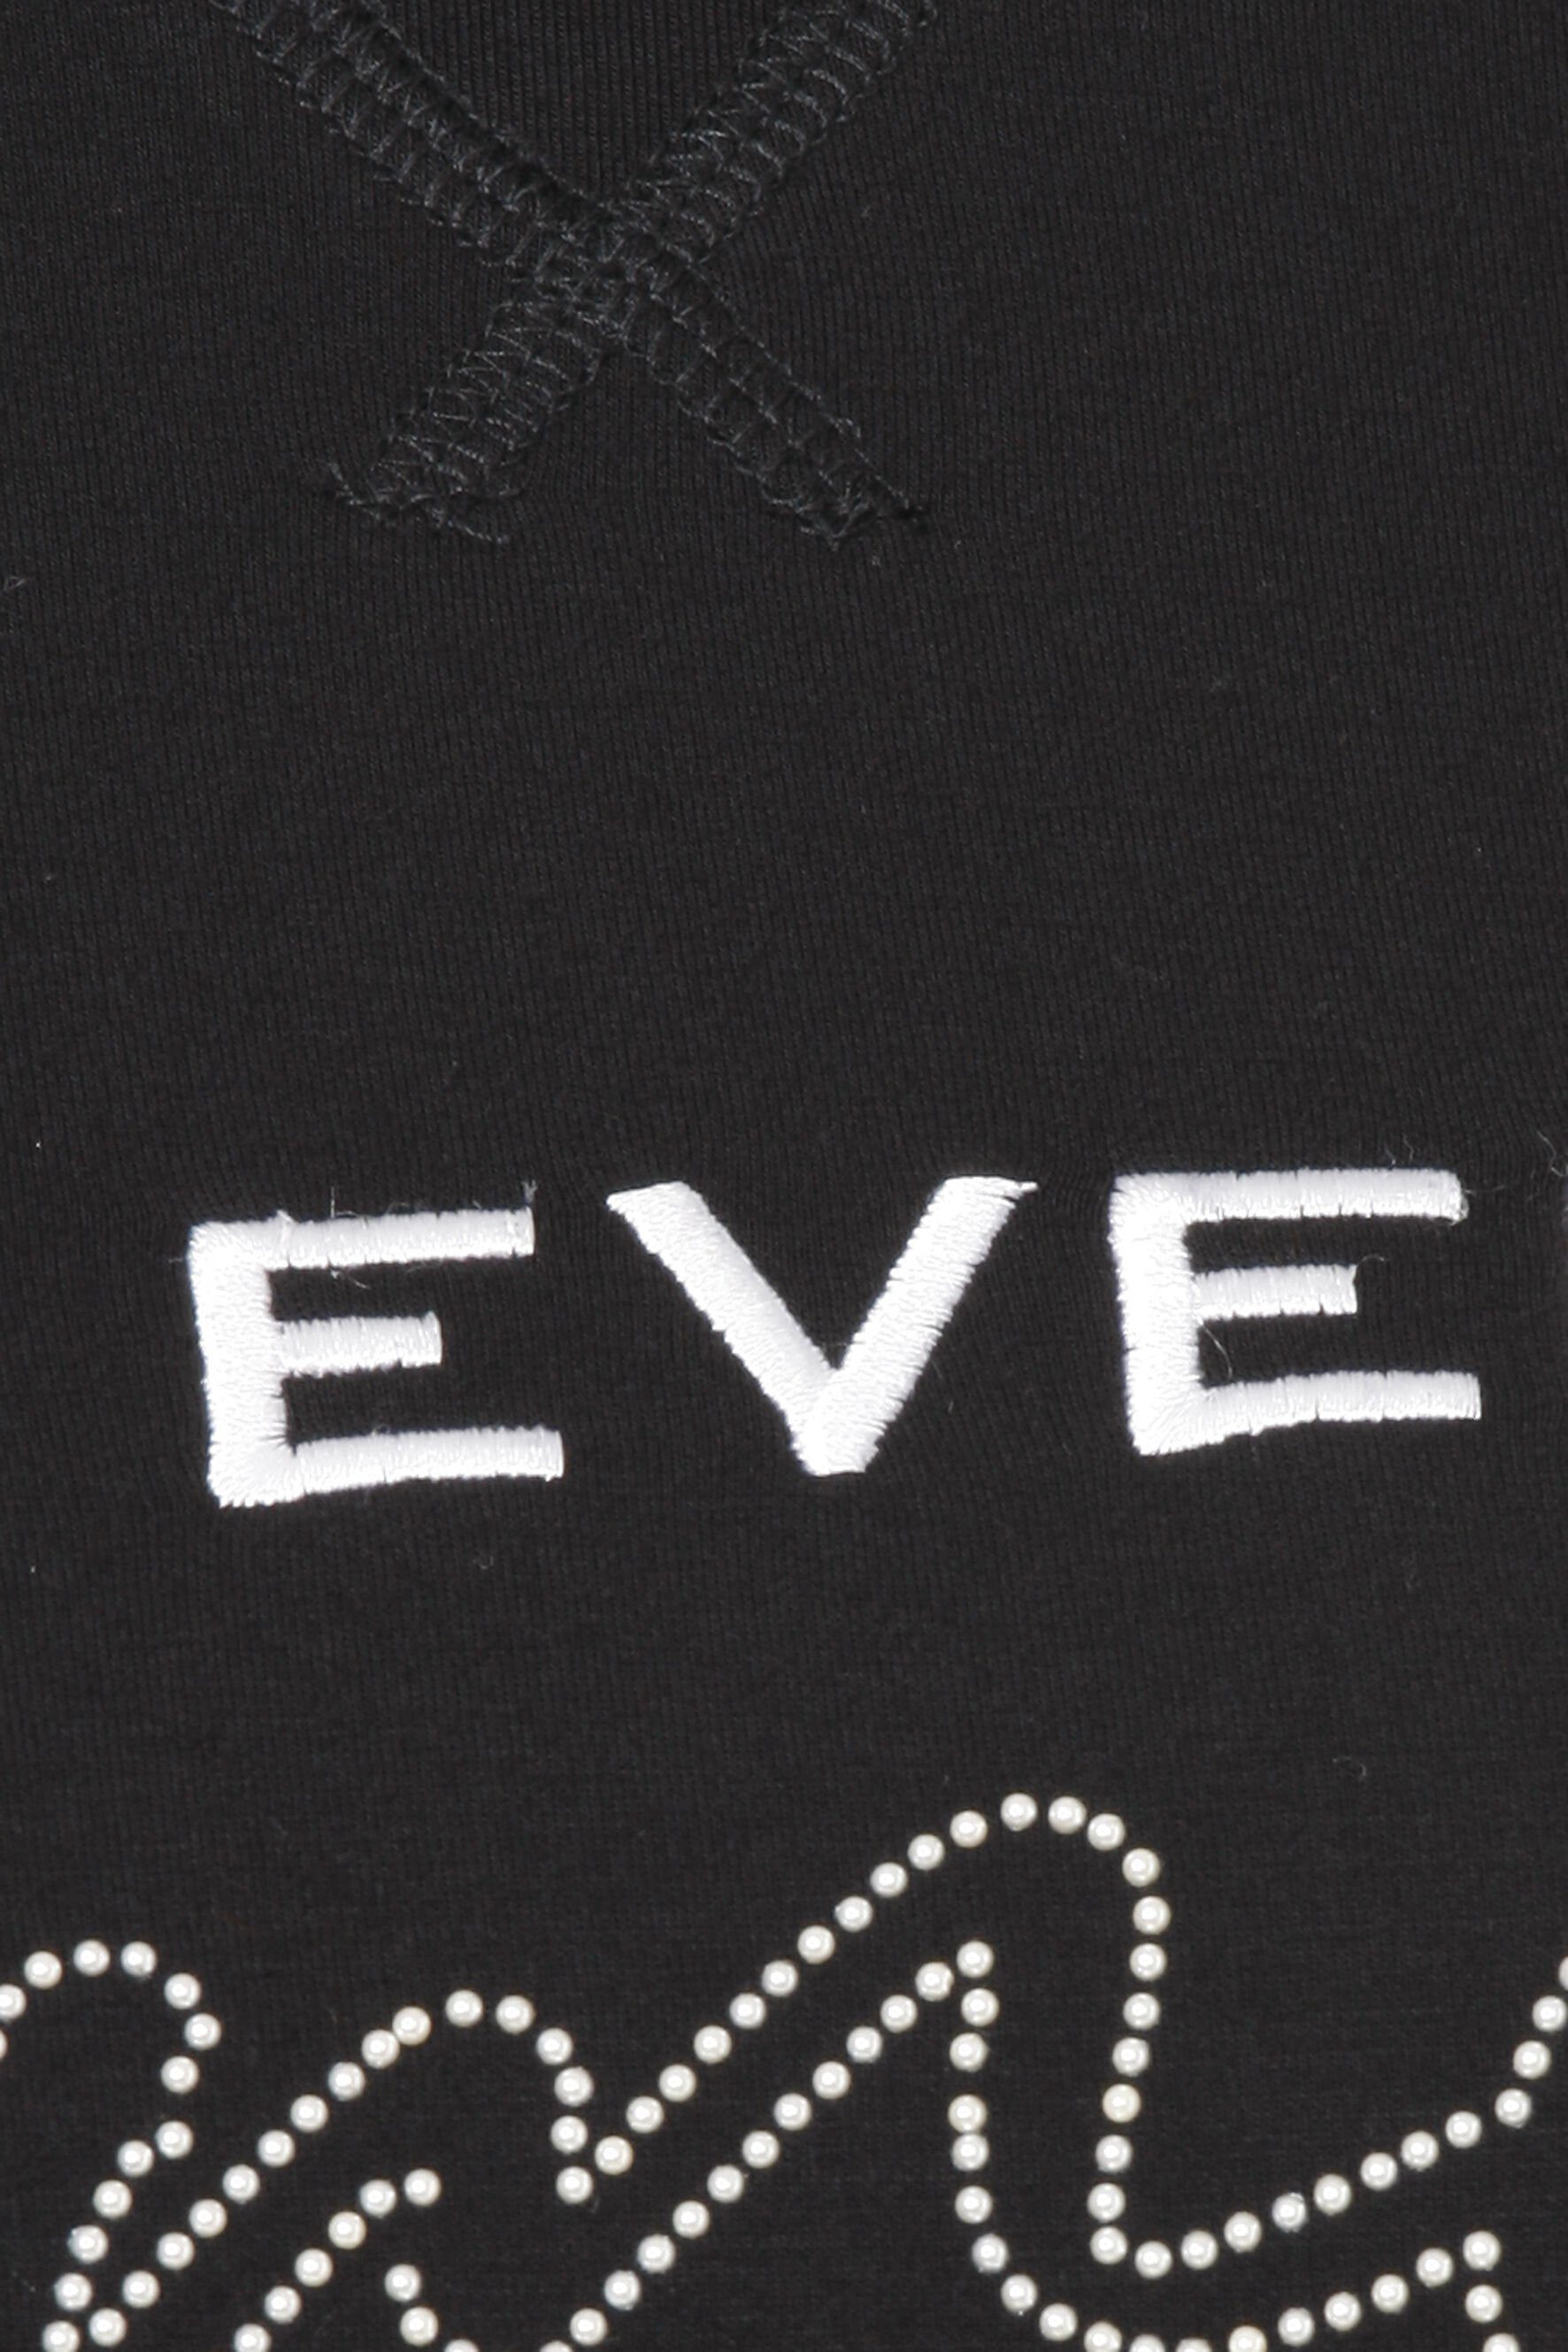 FRAPP Sweatshirt Sportives Kapuzensweatshirt in offwhite / Stil black glänzenden Glitzerdetails mit unifarbenem